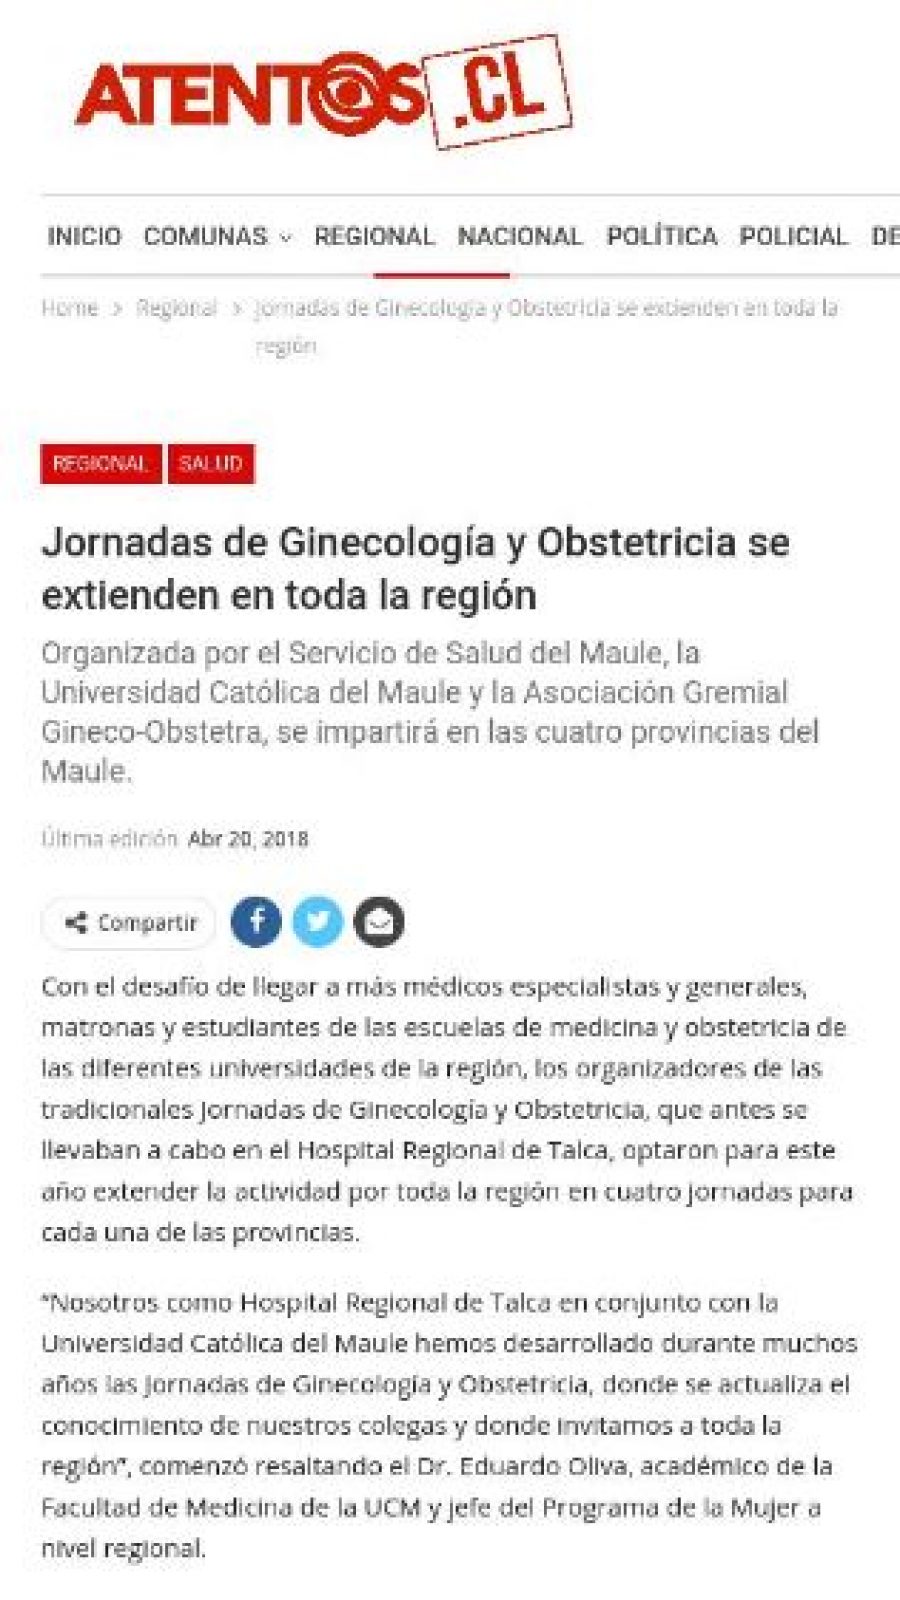 20 de abril en Atentos: “Jornadas de Ginecología y Obstetricia se extienden en toda la región”